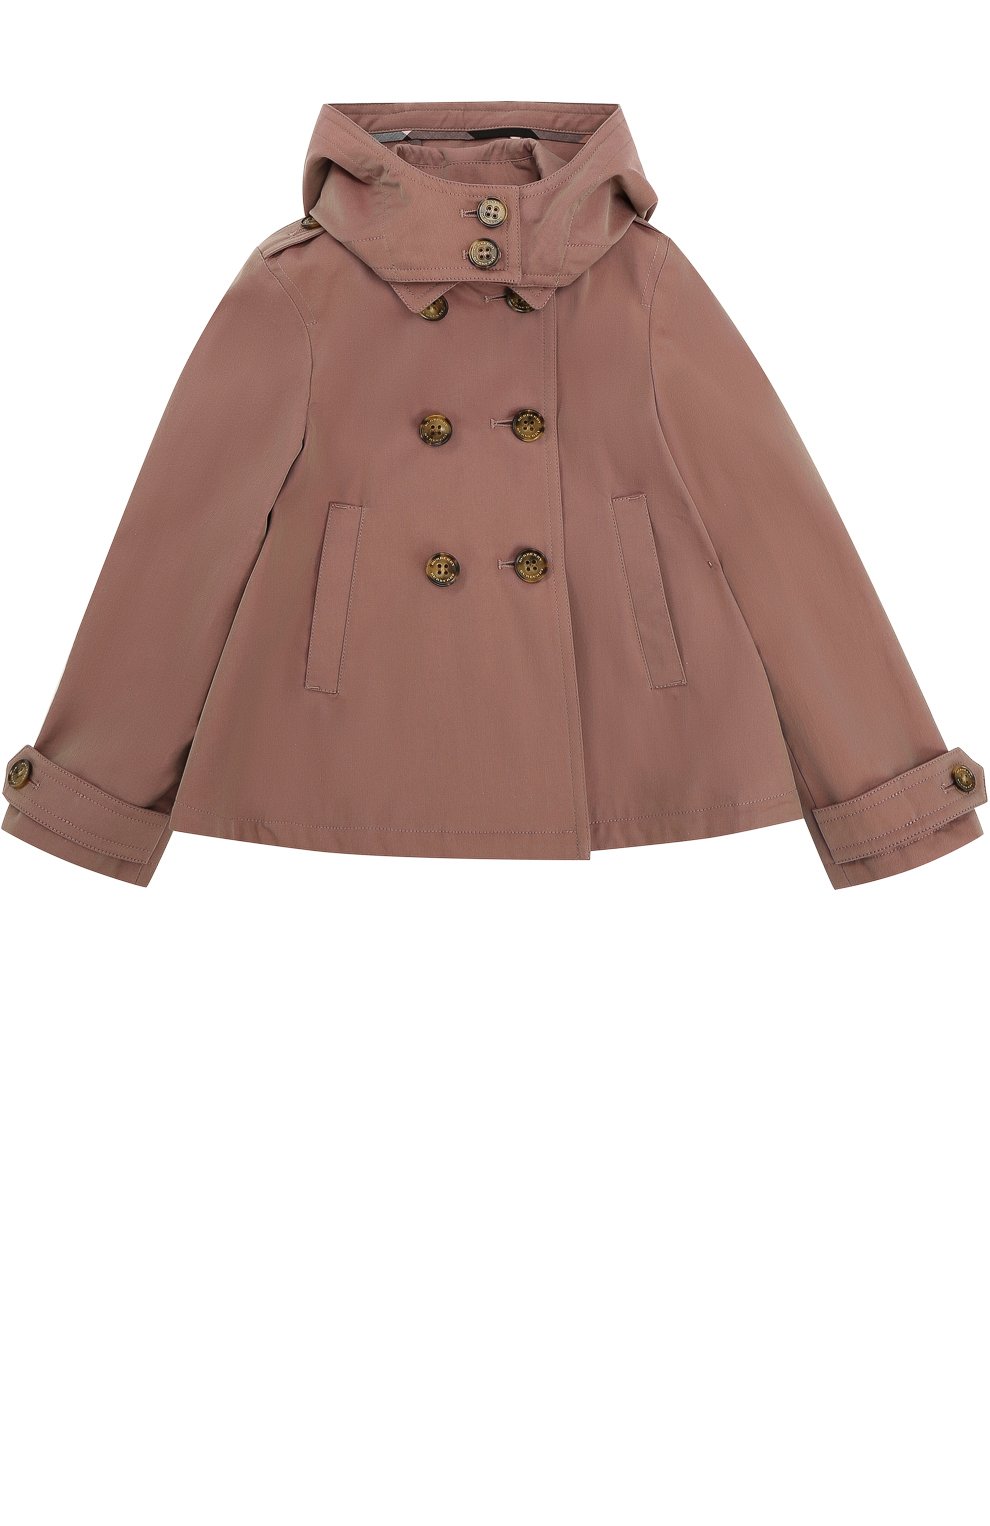 Верхняя одежда Burberry, Двубортный укороченный плащ с капюшоном Burberry, Великобритания, Розовый, Хлопок: 100%;, 2200536  - купить